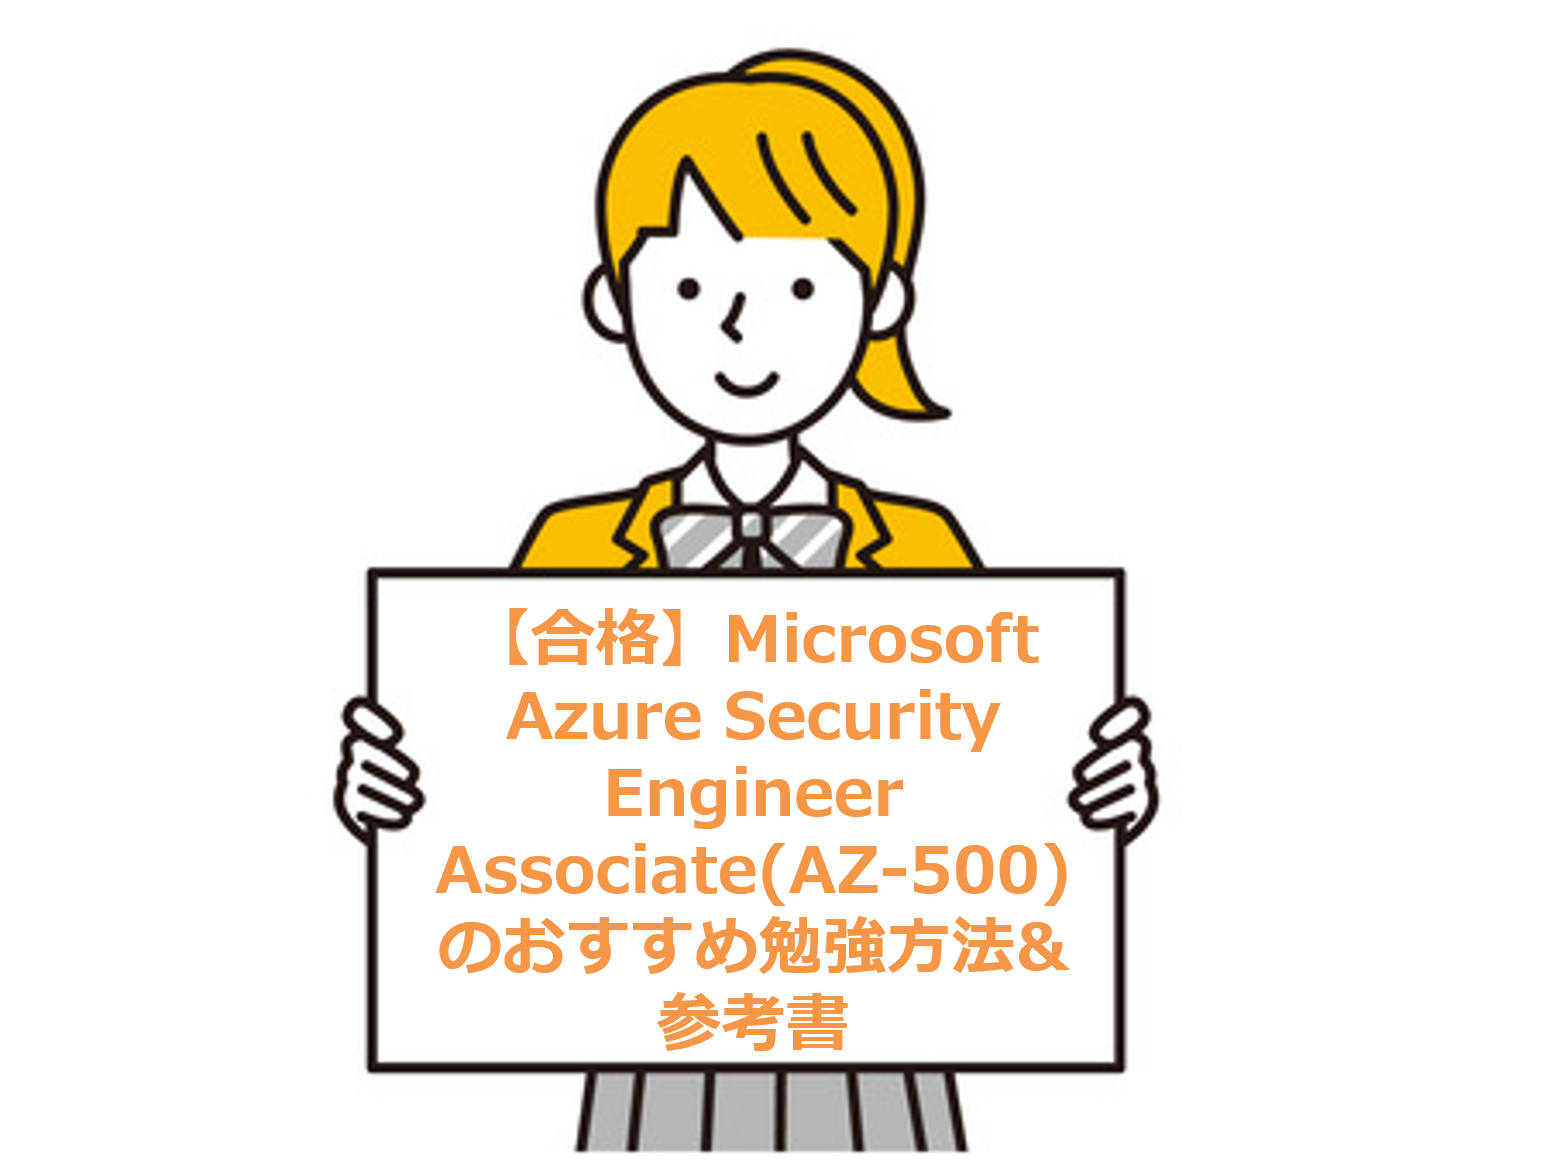 【合格】Microsoft Azure Security Engineer Associate(AZ-500)のおすすめ勉強方法&参考書